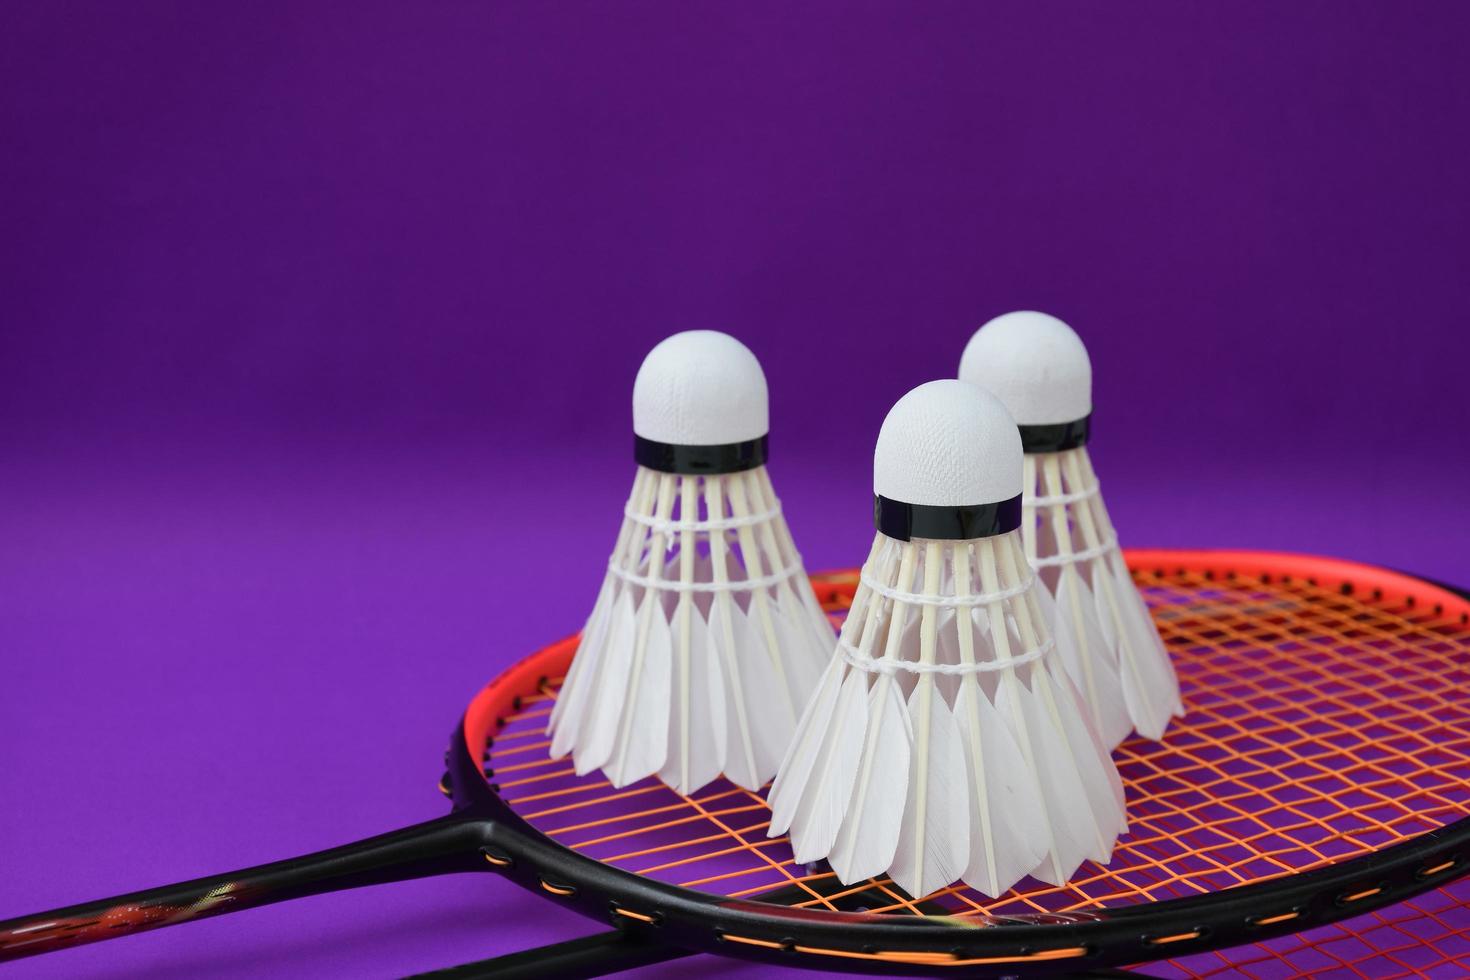 vit krämbadmintonfjäderboll framför badmintonracketar på lila golv på inomhusbadmintonbanan, mjukt och selektivt fokus på fjäderboll, koncept för badmintonsportälskare runt om i världen foto